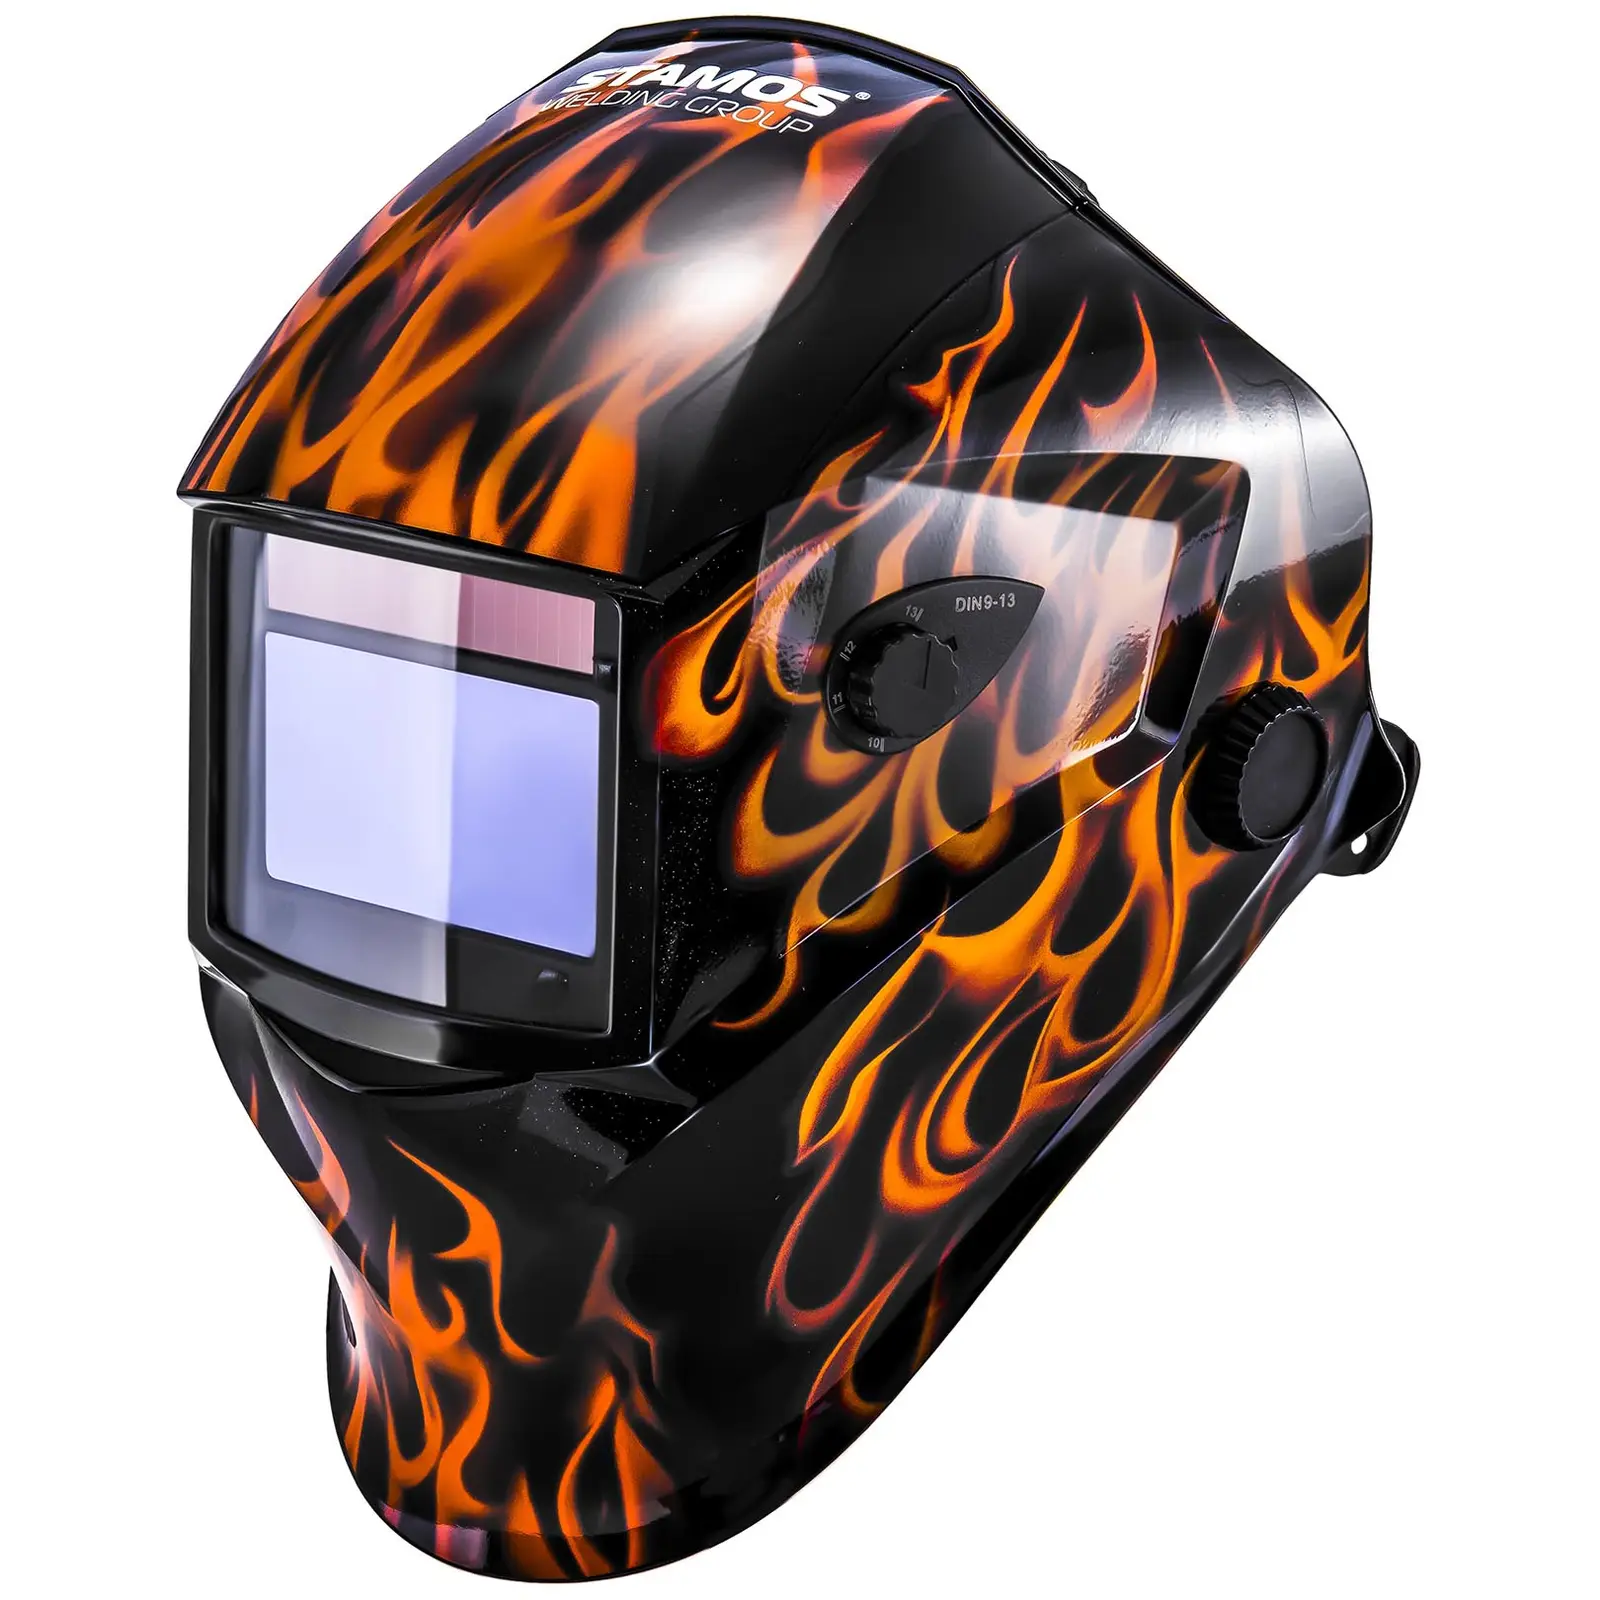 Maschera da saldatore - Firestarter 500 - advanced series